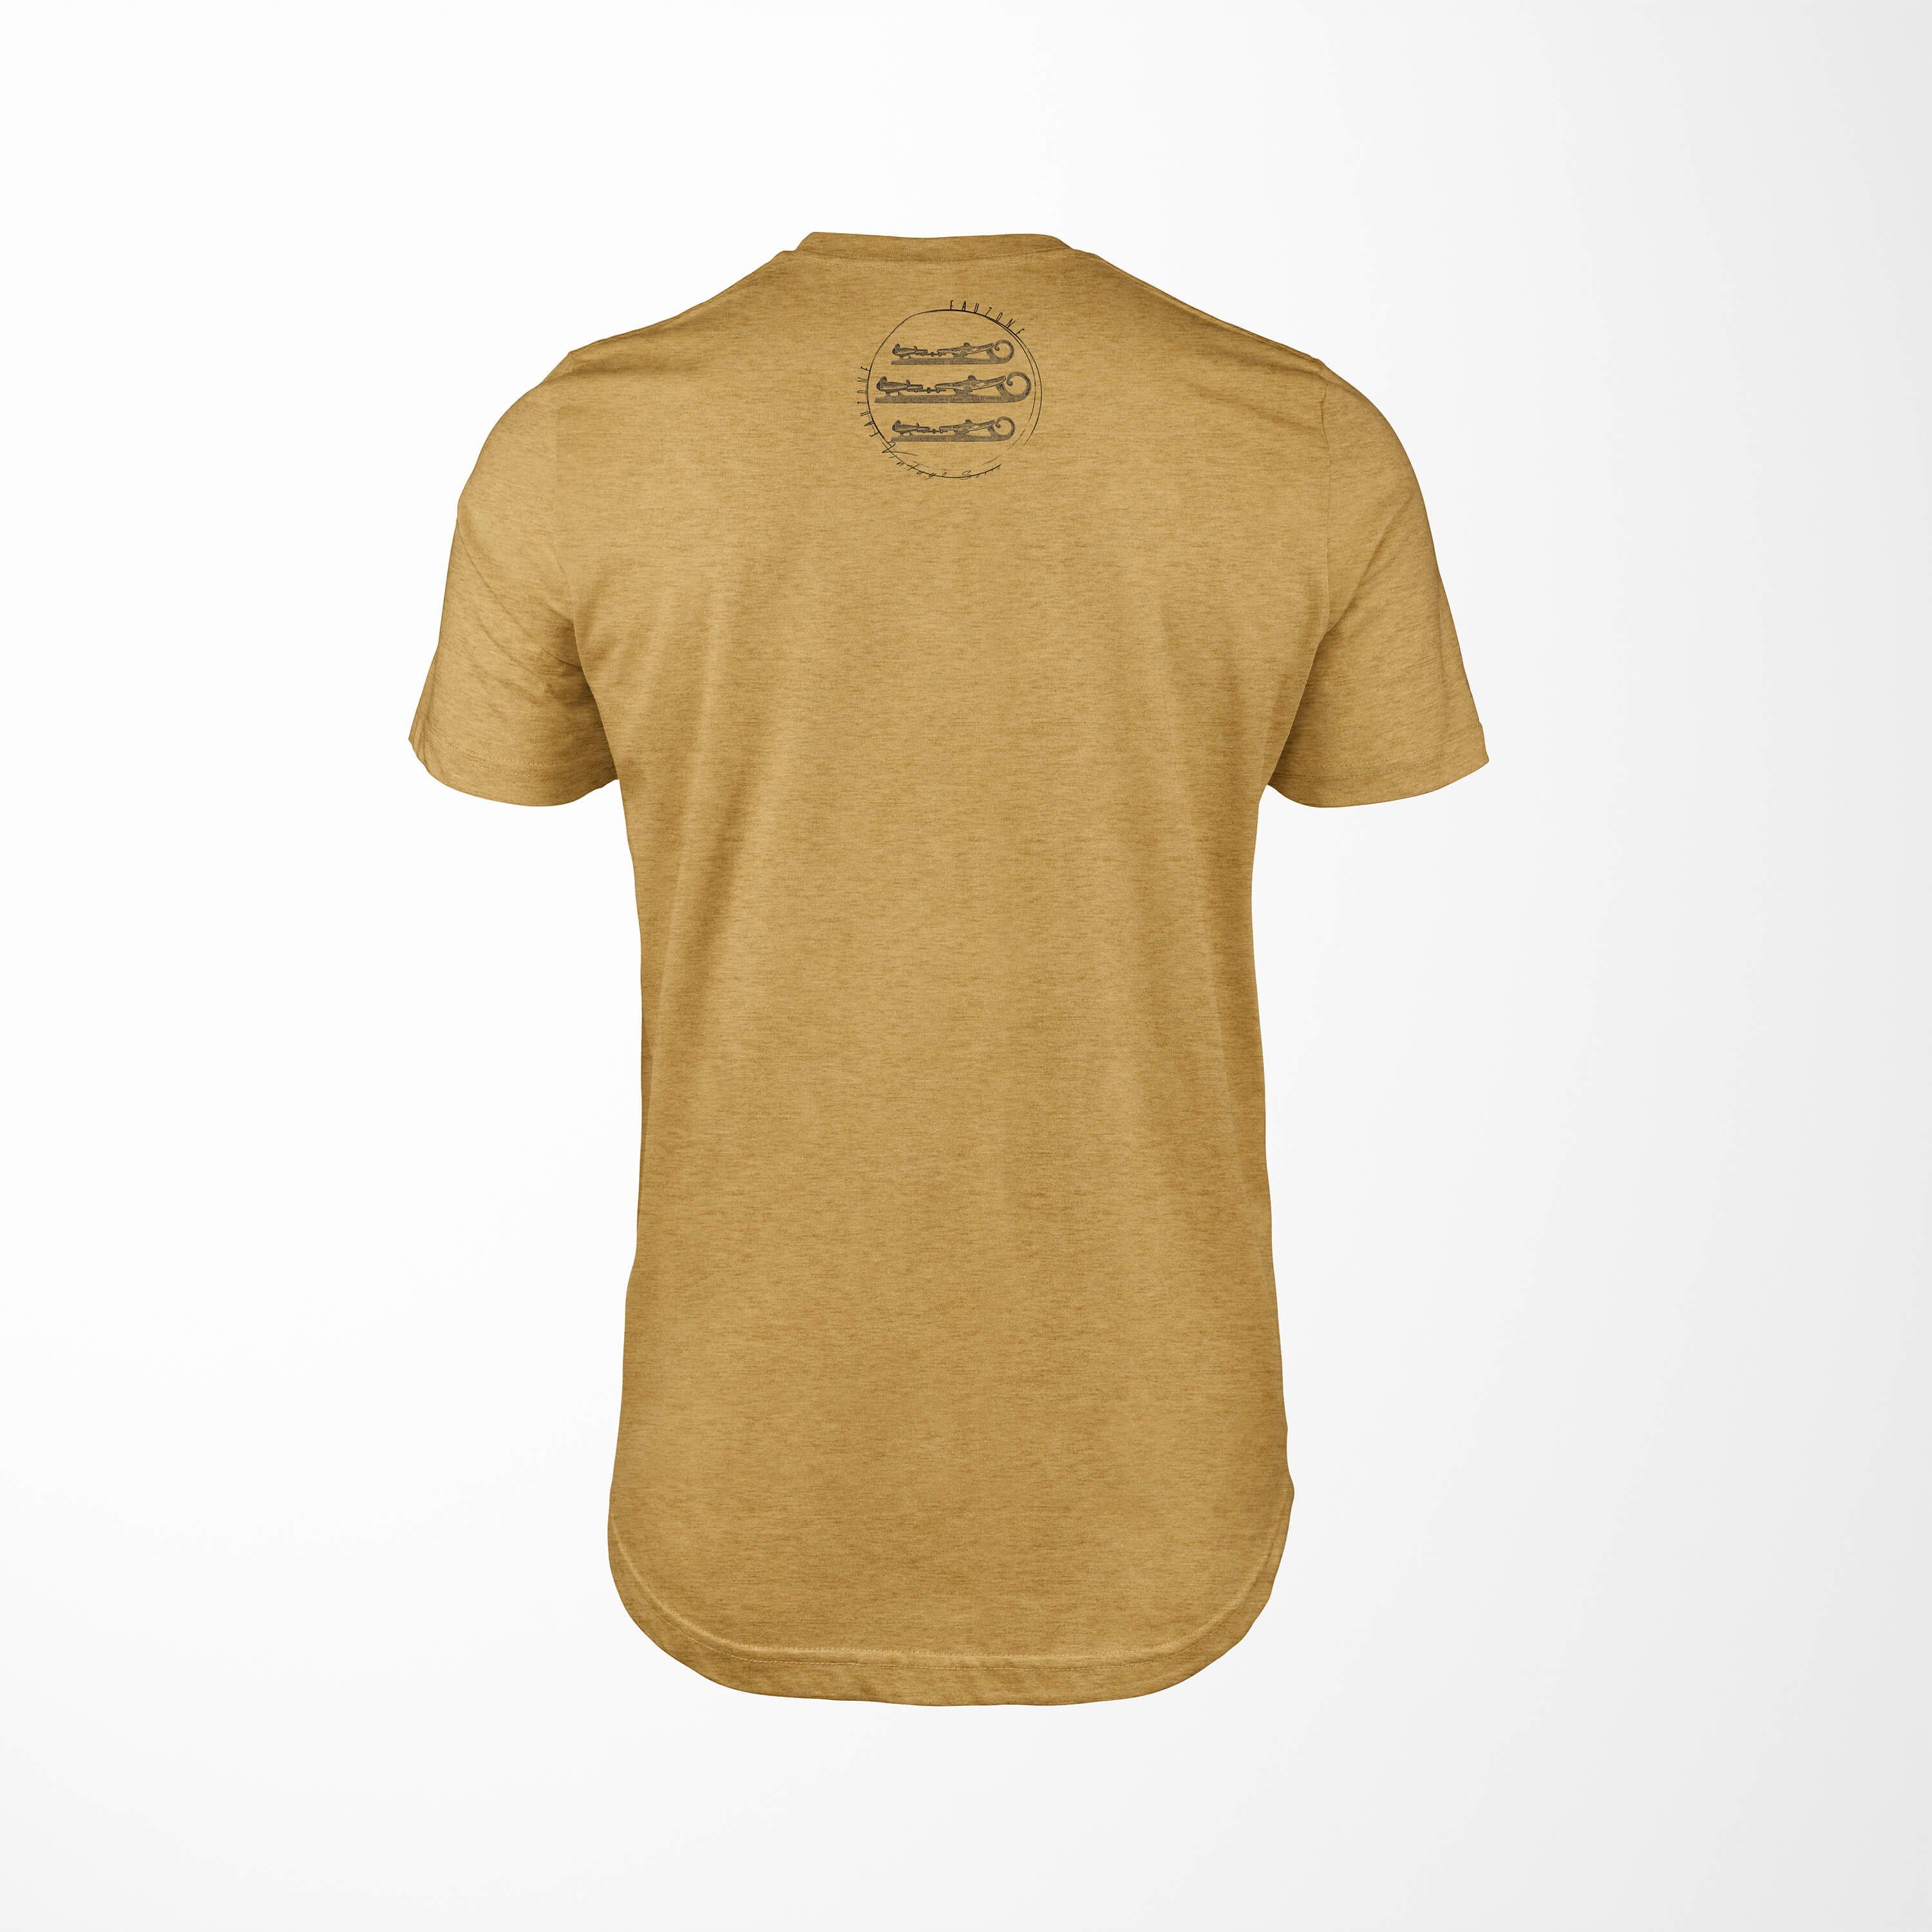 Sinus Art T-Shirt Vintage Schlittschuhe Herren T-Shirt Antique Gold